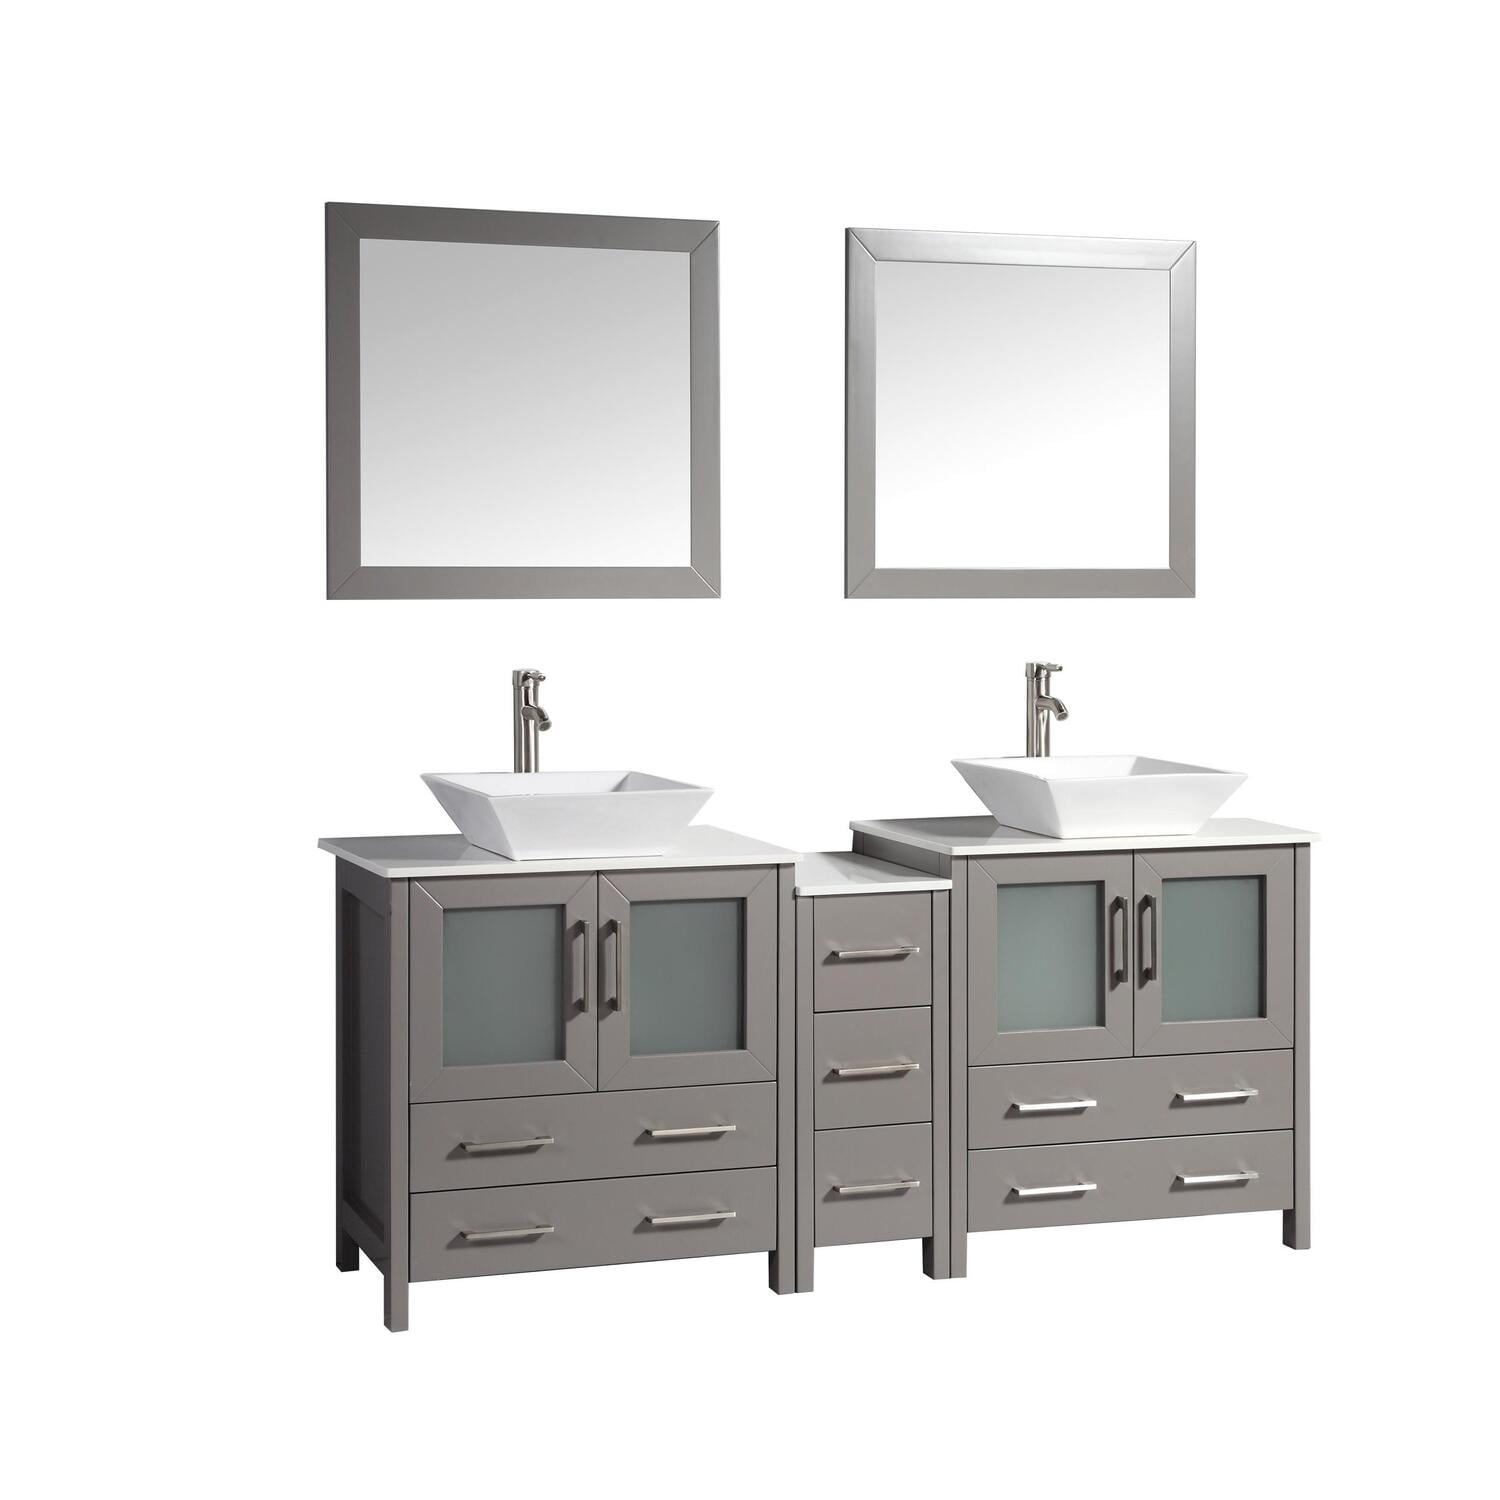 Vanity Art 72 Inch Double Sink Bathroom, 72 Inch Vanity Top Double Sink Home Depot